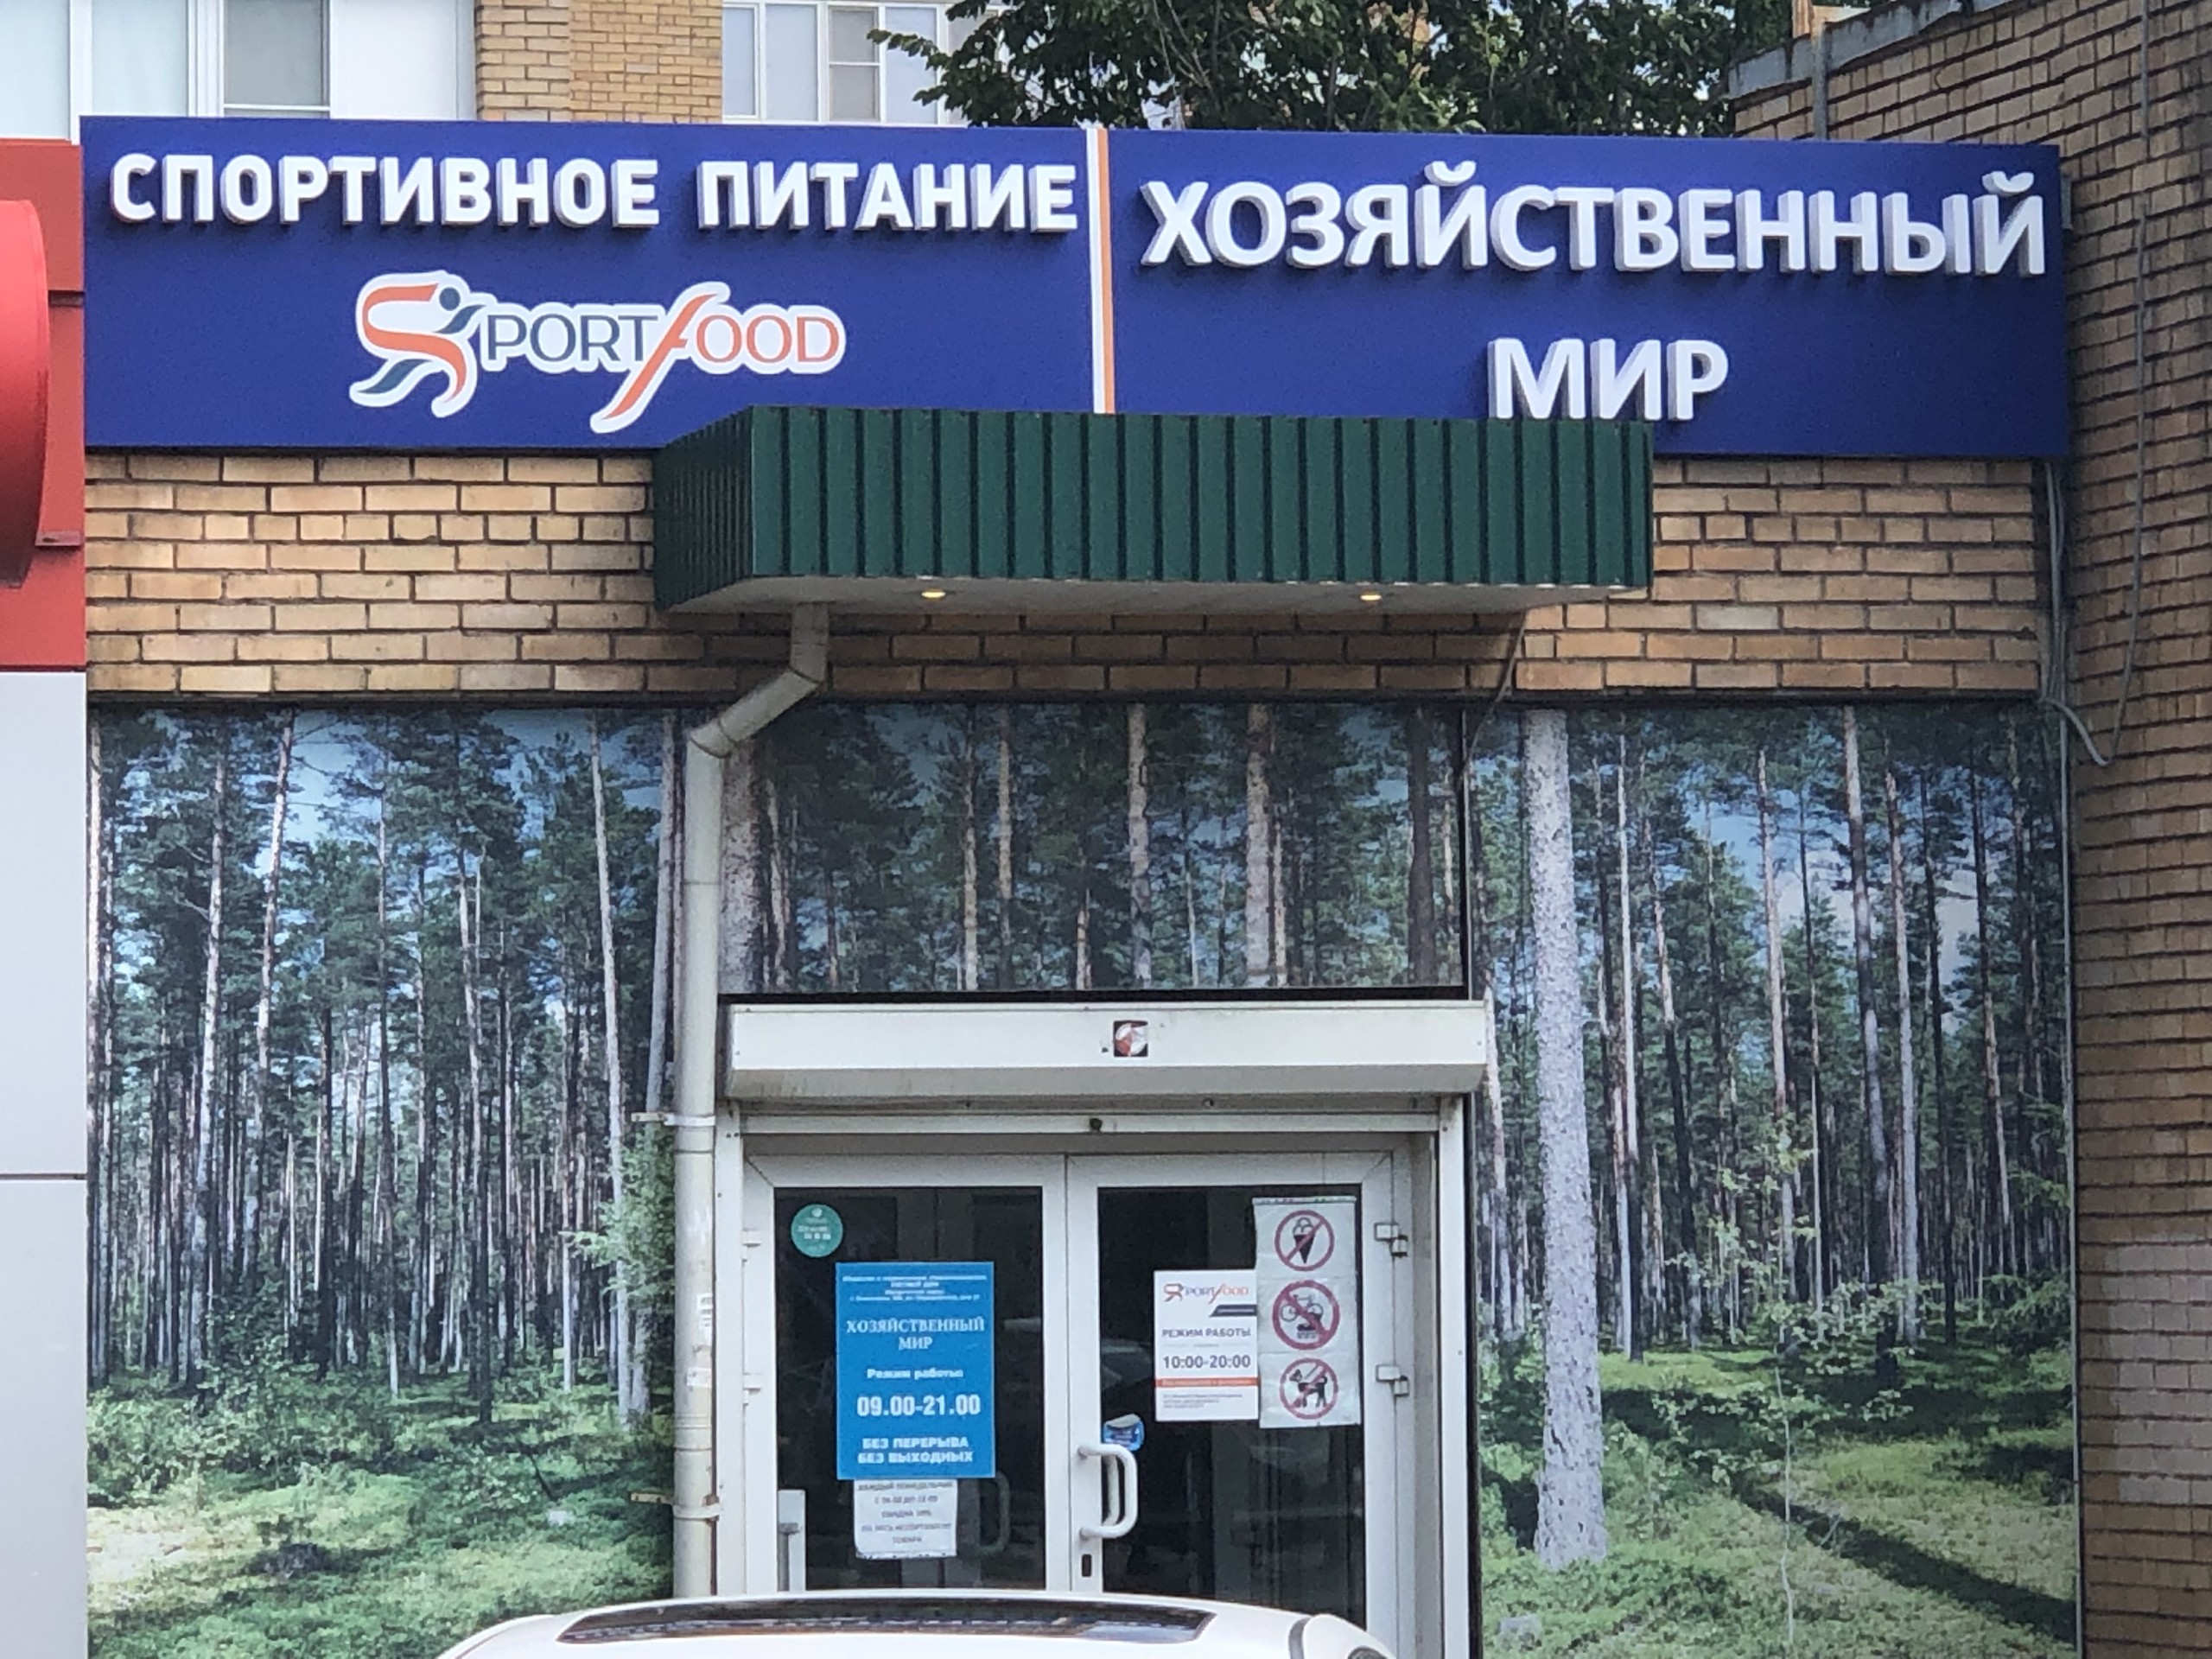 Вакансии в ивантеевке московской области